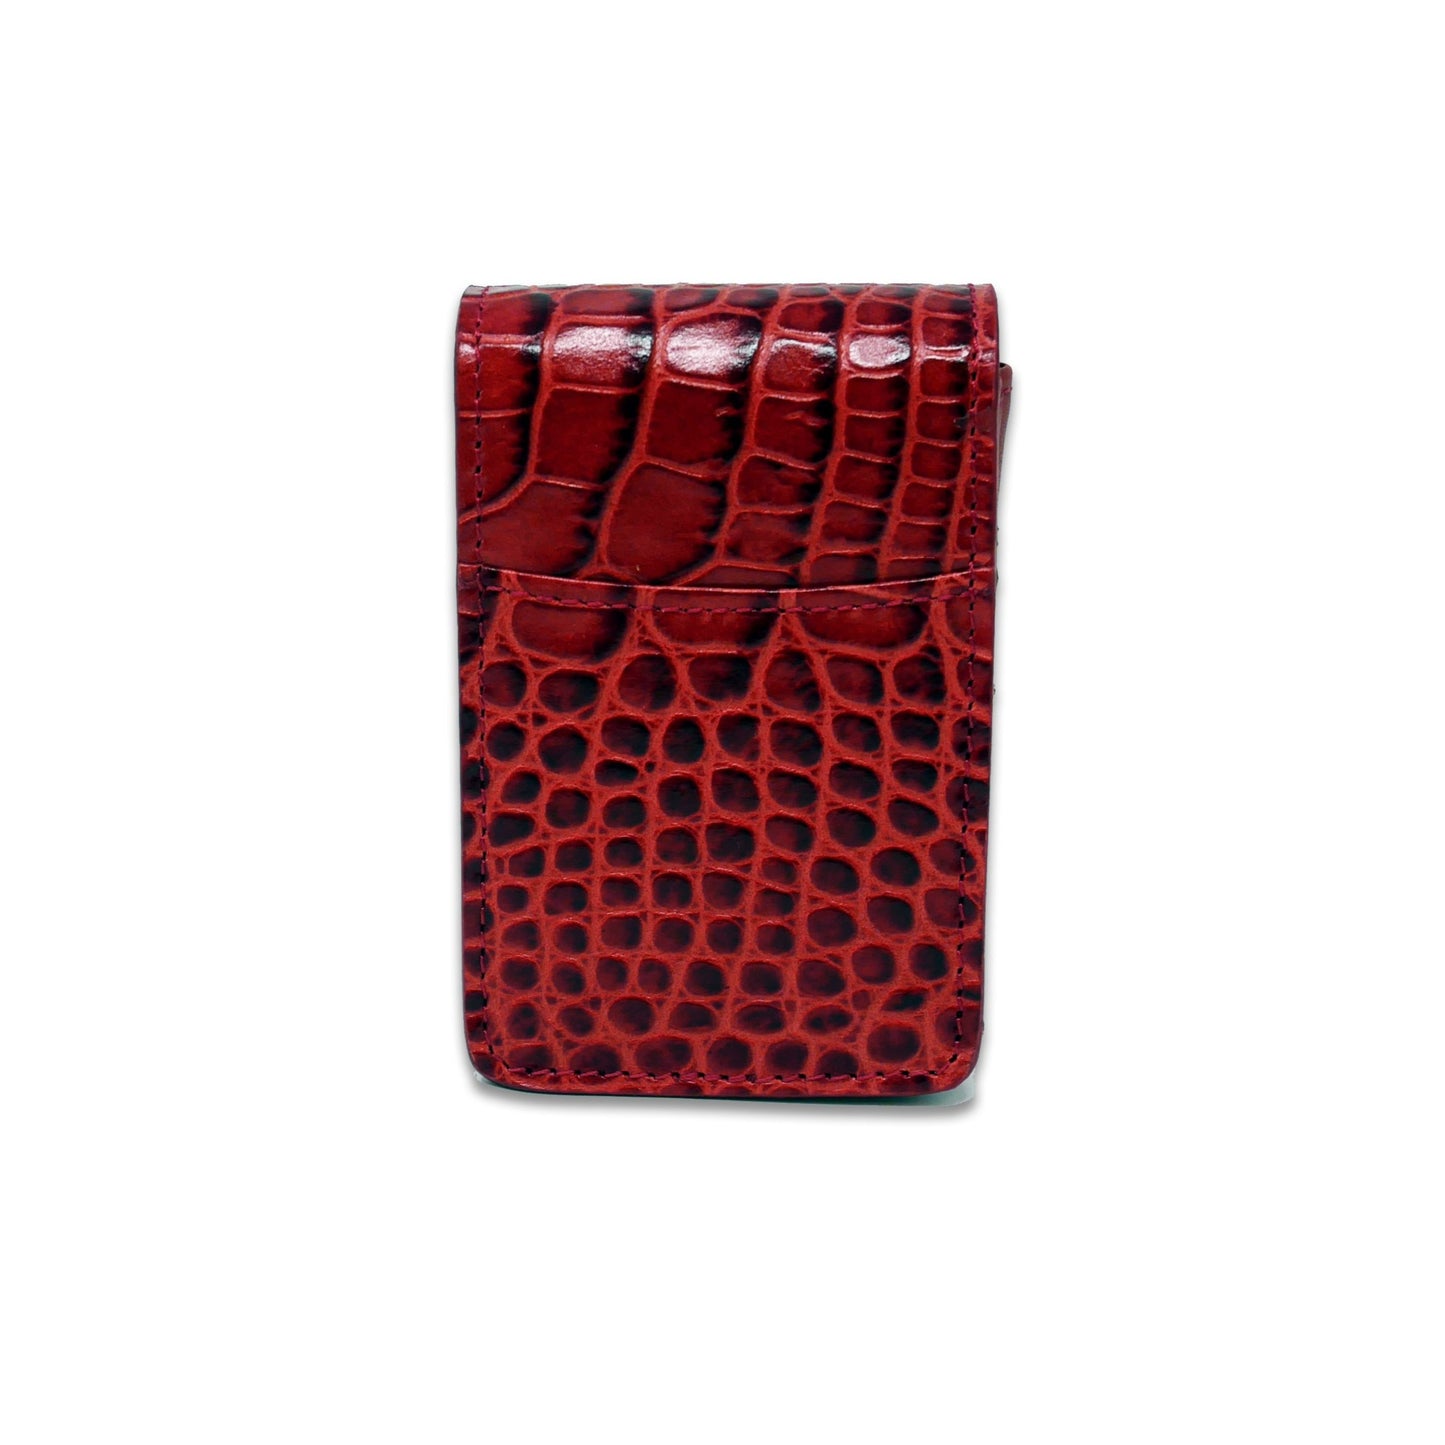 Cigarette Case - Red Crocodile